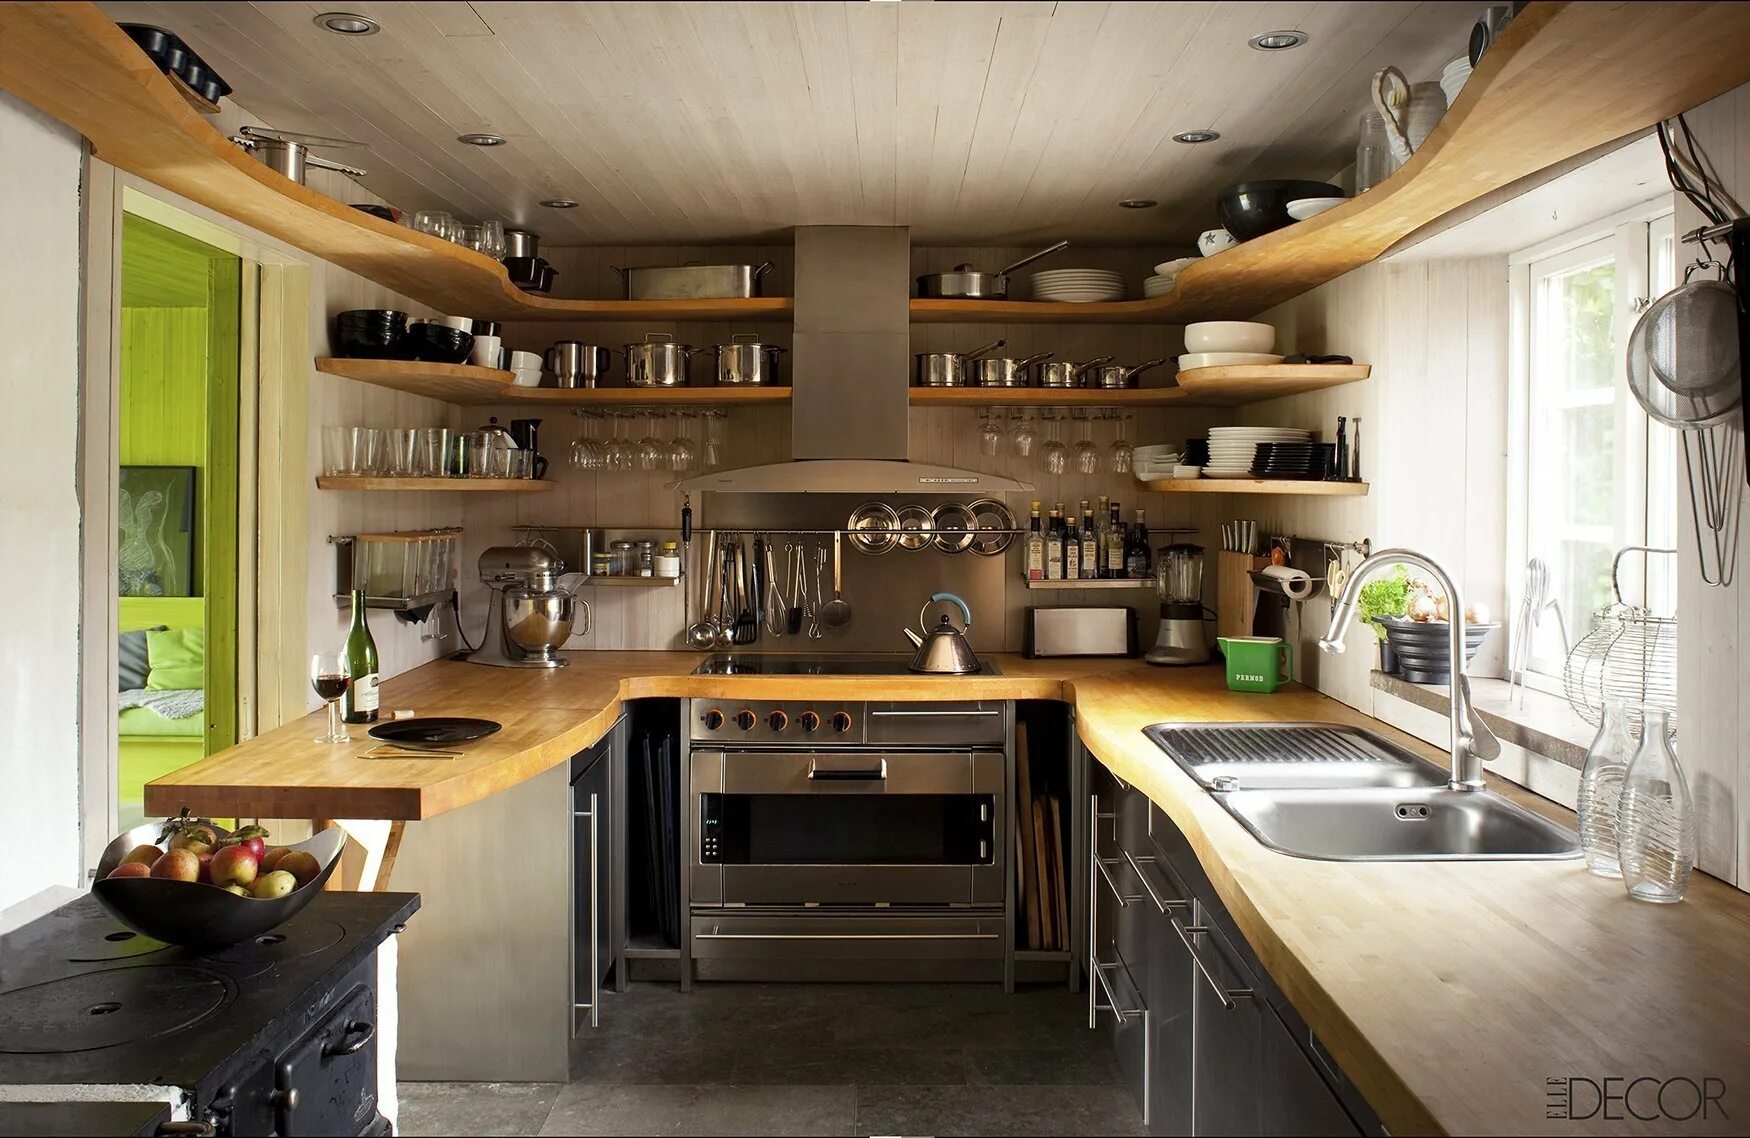 Как можно обустроить кухню. Необычные решения для кухни. Интересные идеи для кухни. Необычные маленькие кухни. Интерьер небольшой кухни в частном доме.